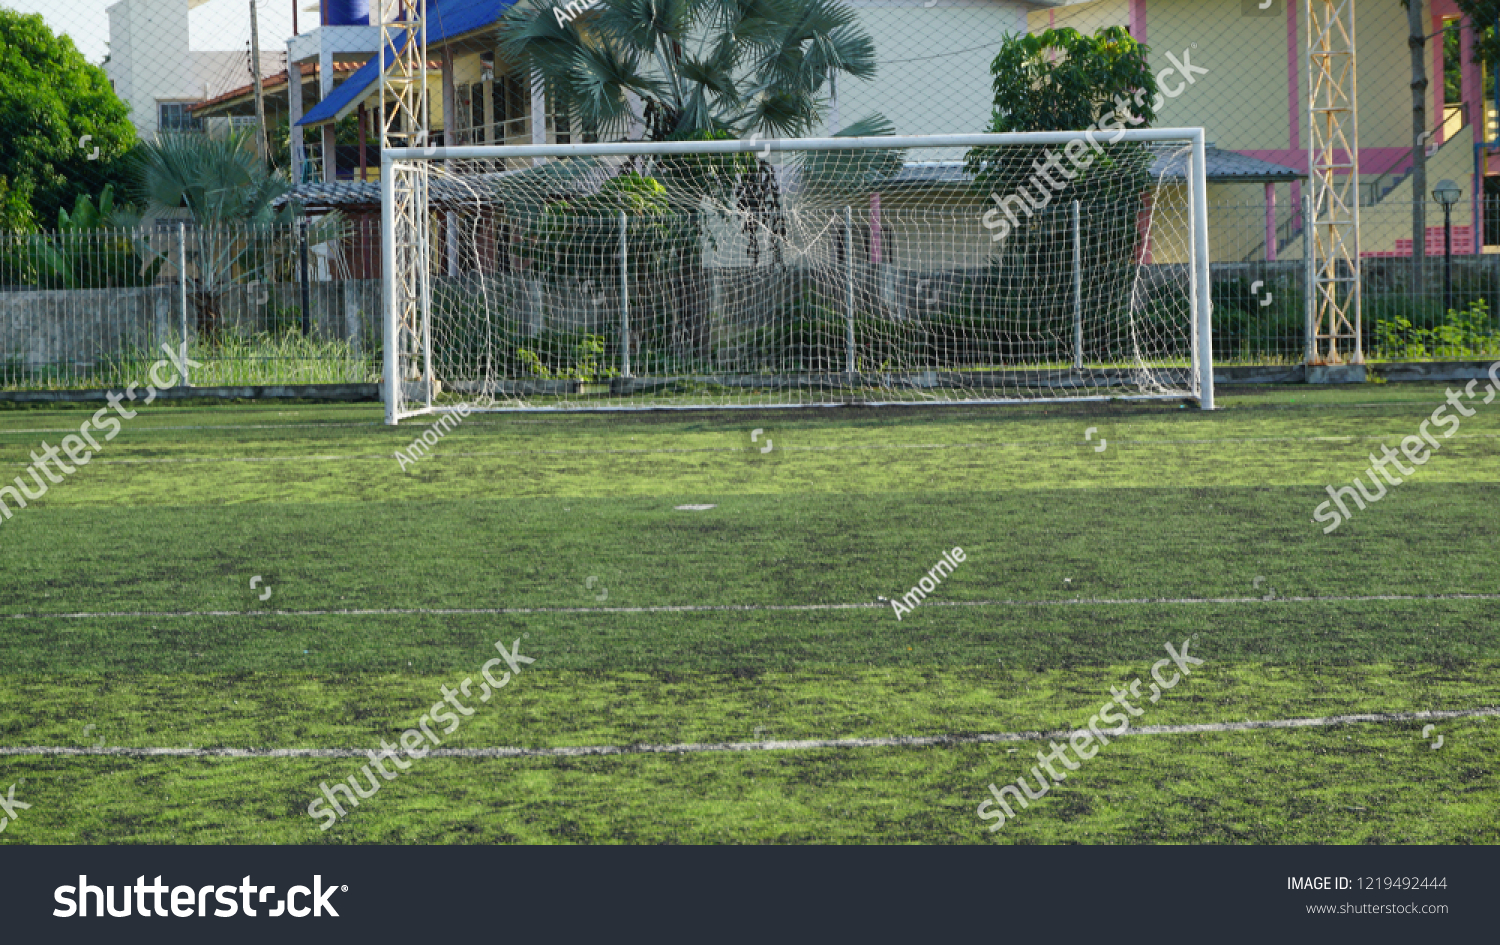 Soccer Goal or Football Goal #1219492444